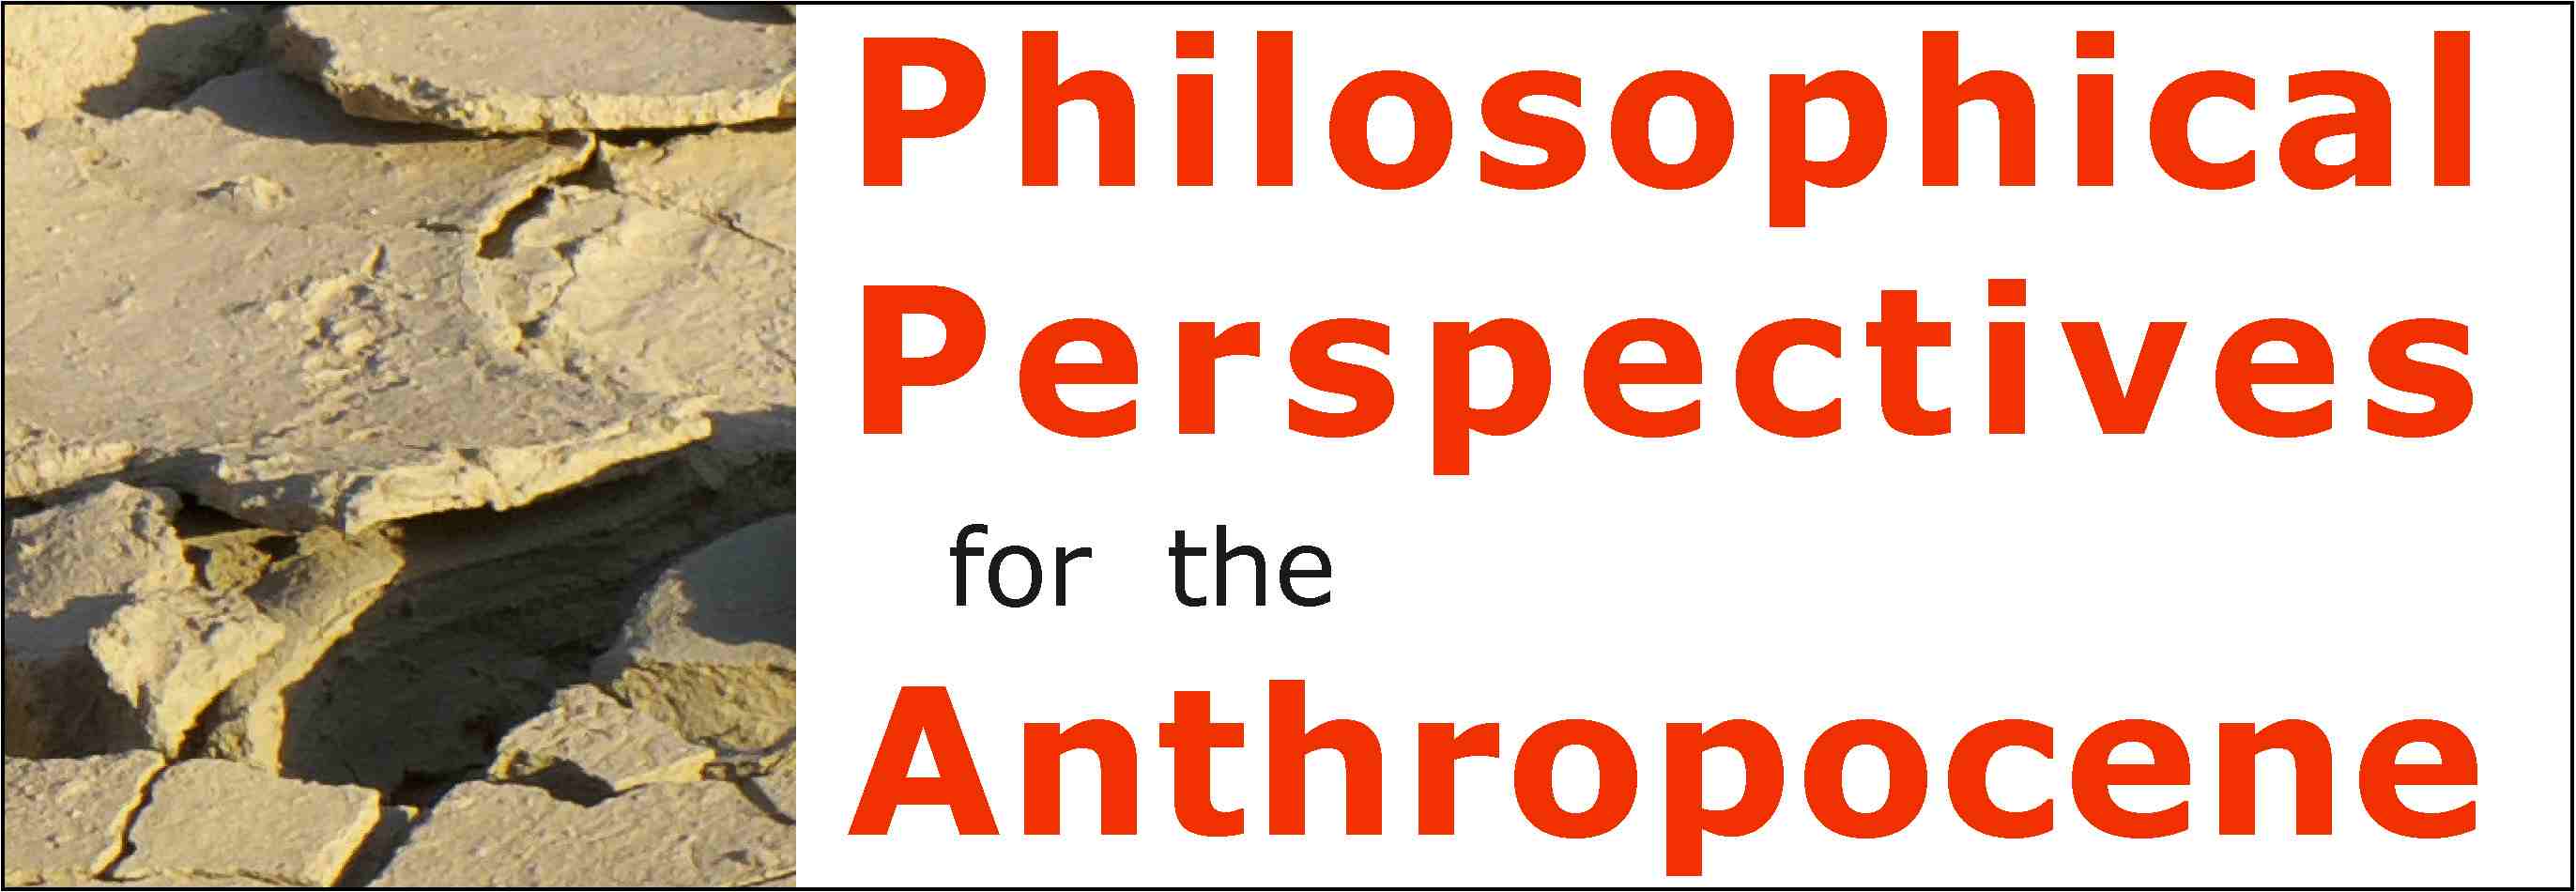 Foto von ausgetrockneter Erde und Titel der Vortragsreihe Philosophical Perspectives for the Anthropocene